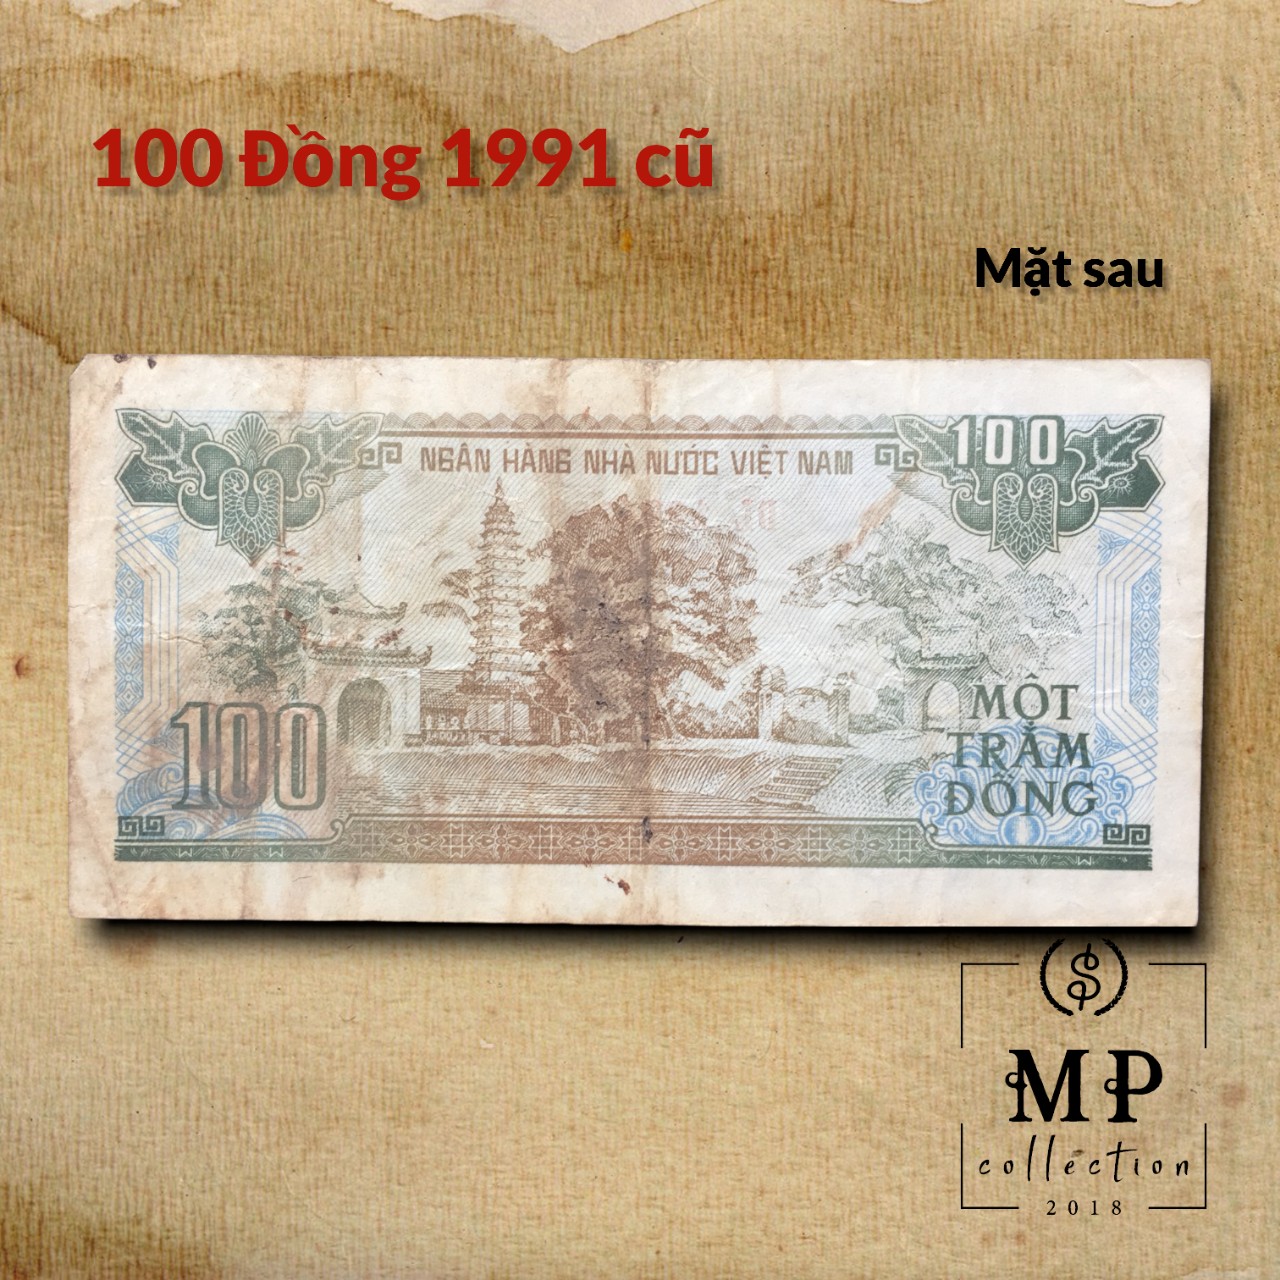 Tờ tiền 100 đồng 1991 cũ bot Cai Lậy xưa.